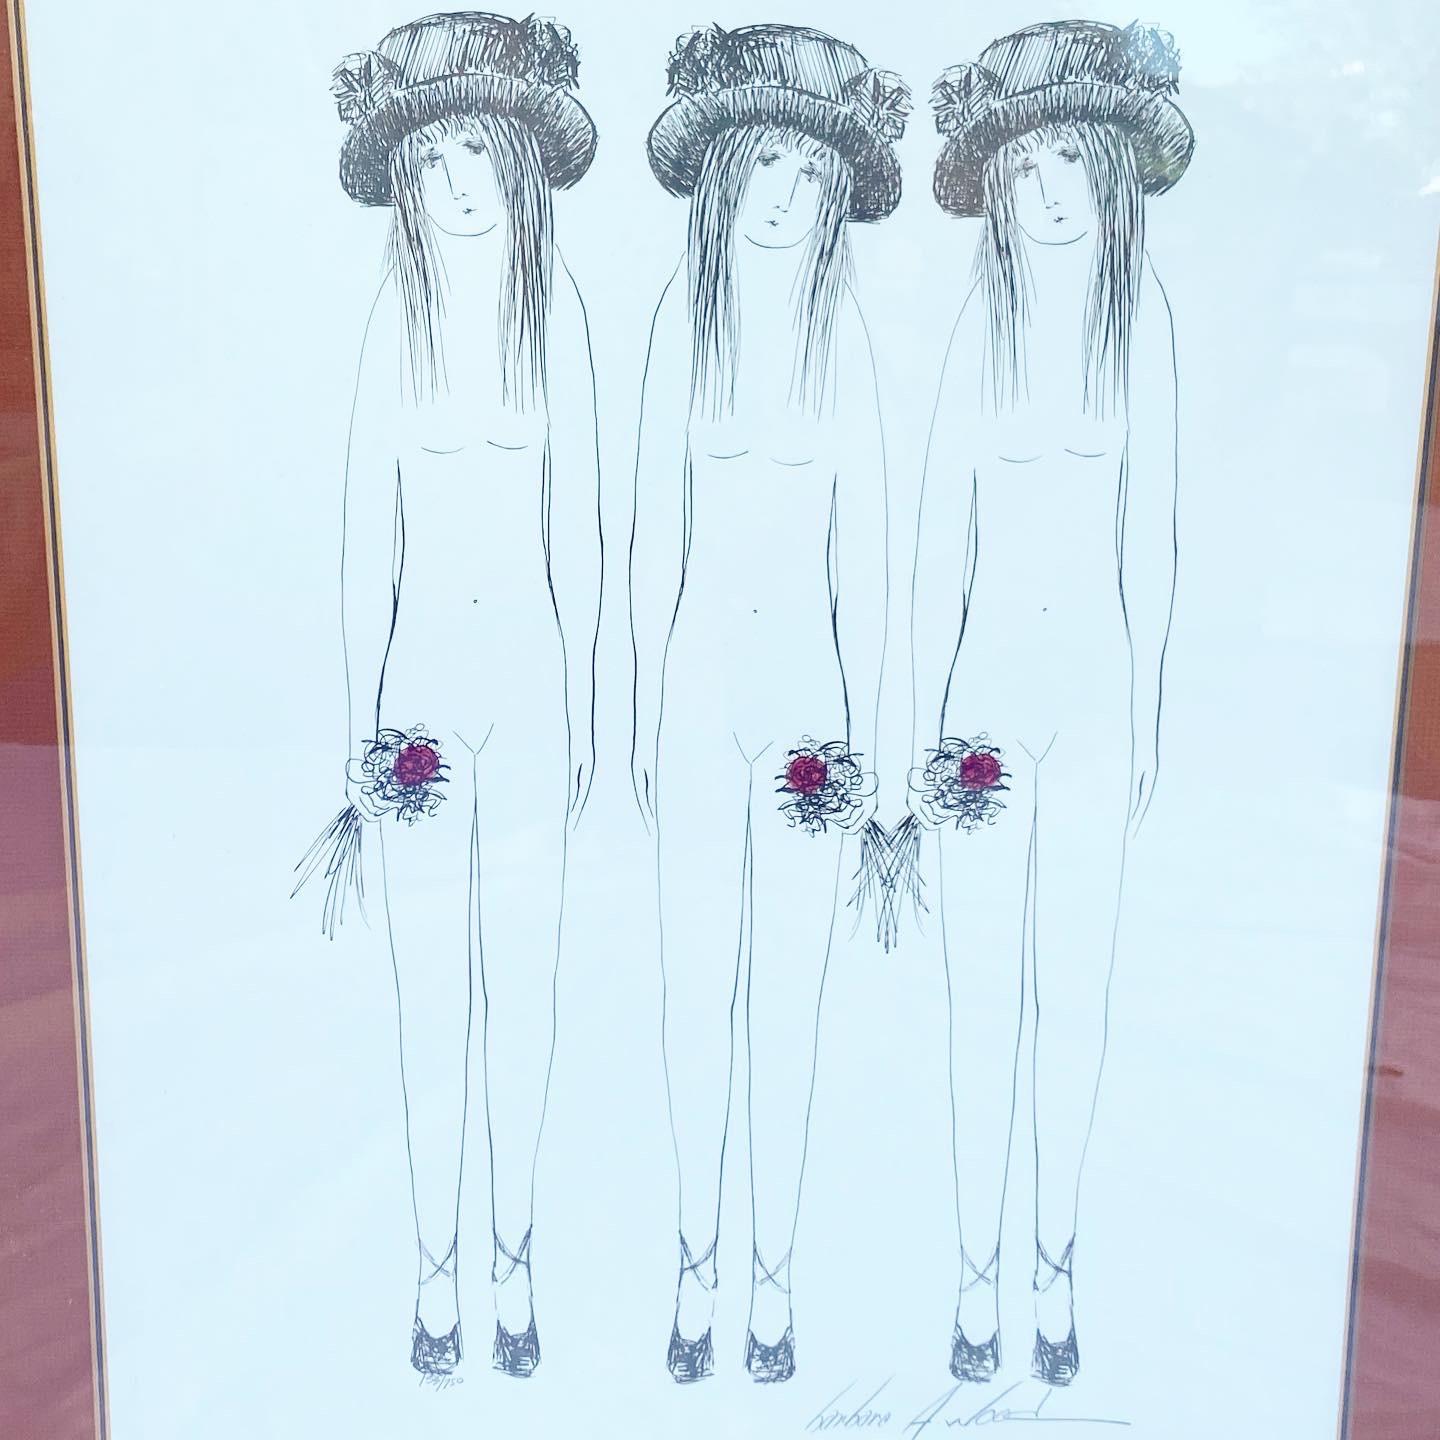 Schöne signierte und nummerierte Lithographie, die drei Schwestern mit Hüten und Blumen in der Hand zeigt.

Barbara Wood ist gebürtig aus Columbus, Ohio. Barbara, die ihren wirklichen Vater nie kennengelernt hat, wurde von ihrer Mutter, Großmutter